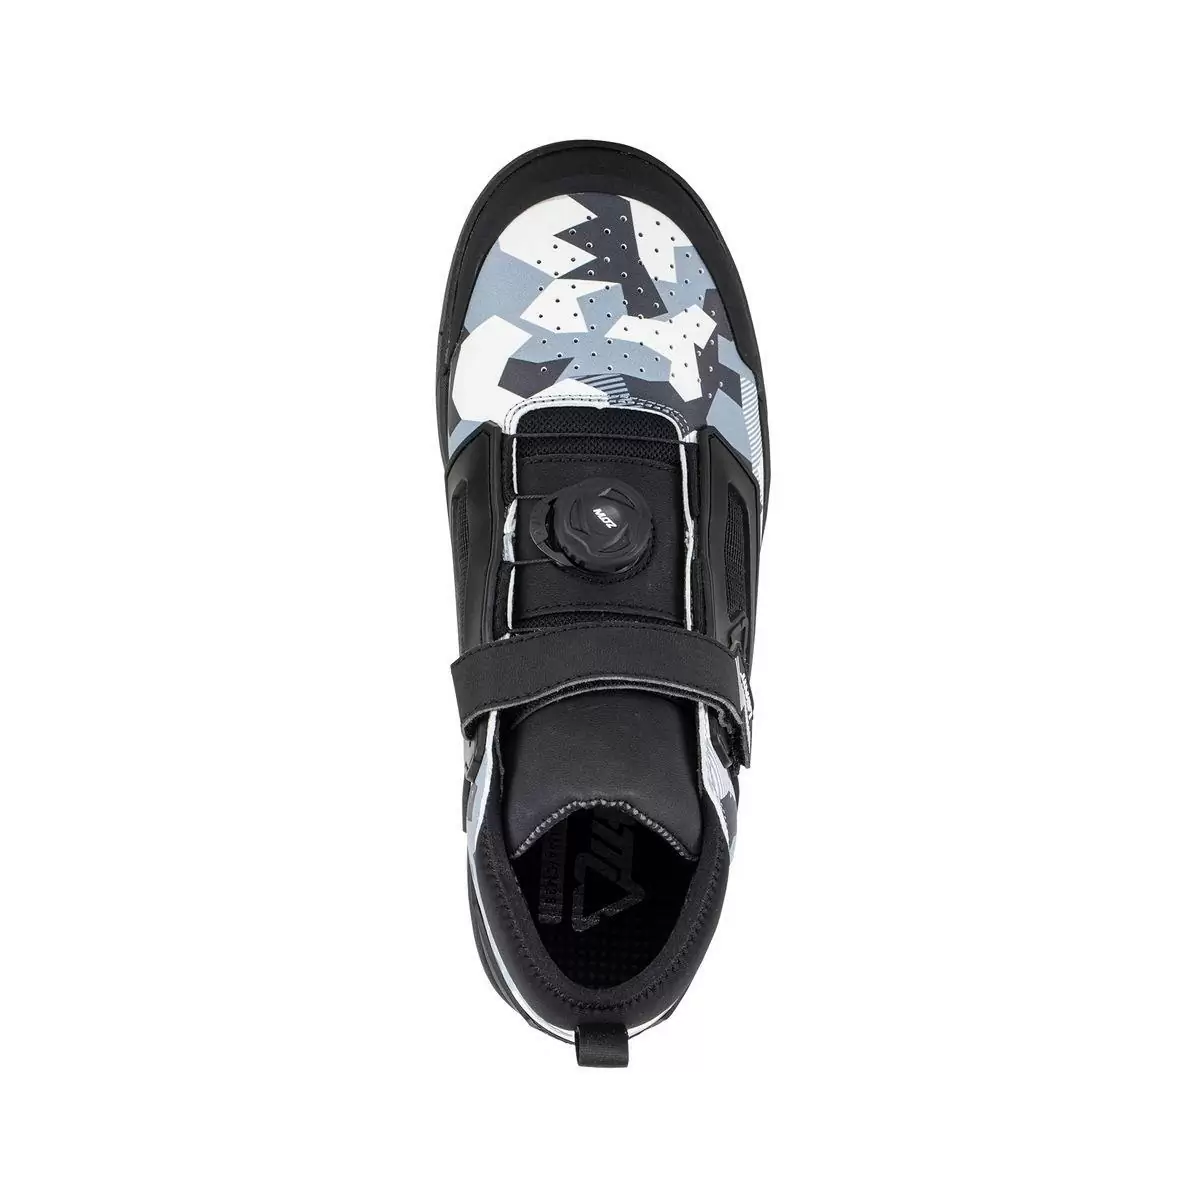 Chaussures VTT 3.0 Flat Pro Blanc/Noir Taille 43 #2